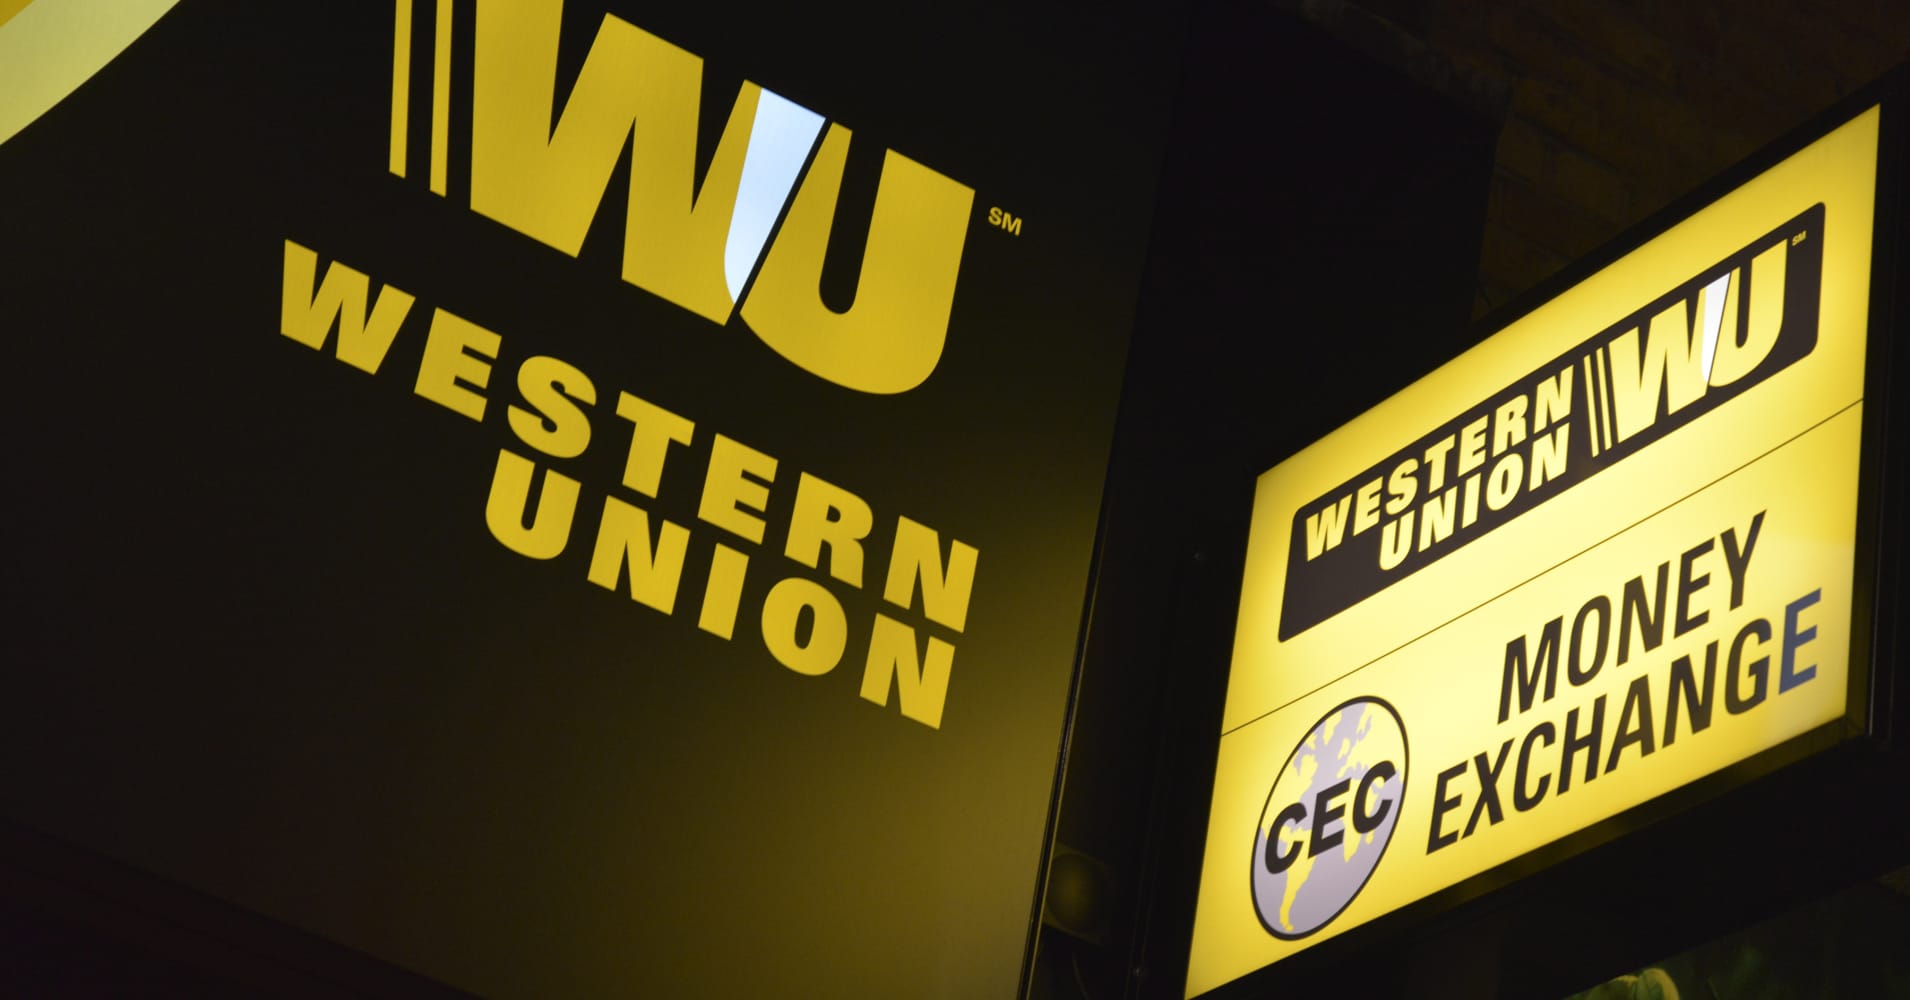 Western Union HГ¶chstbetrag